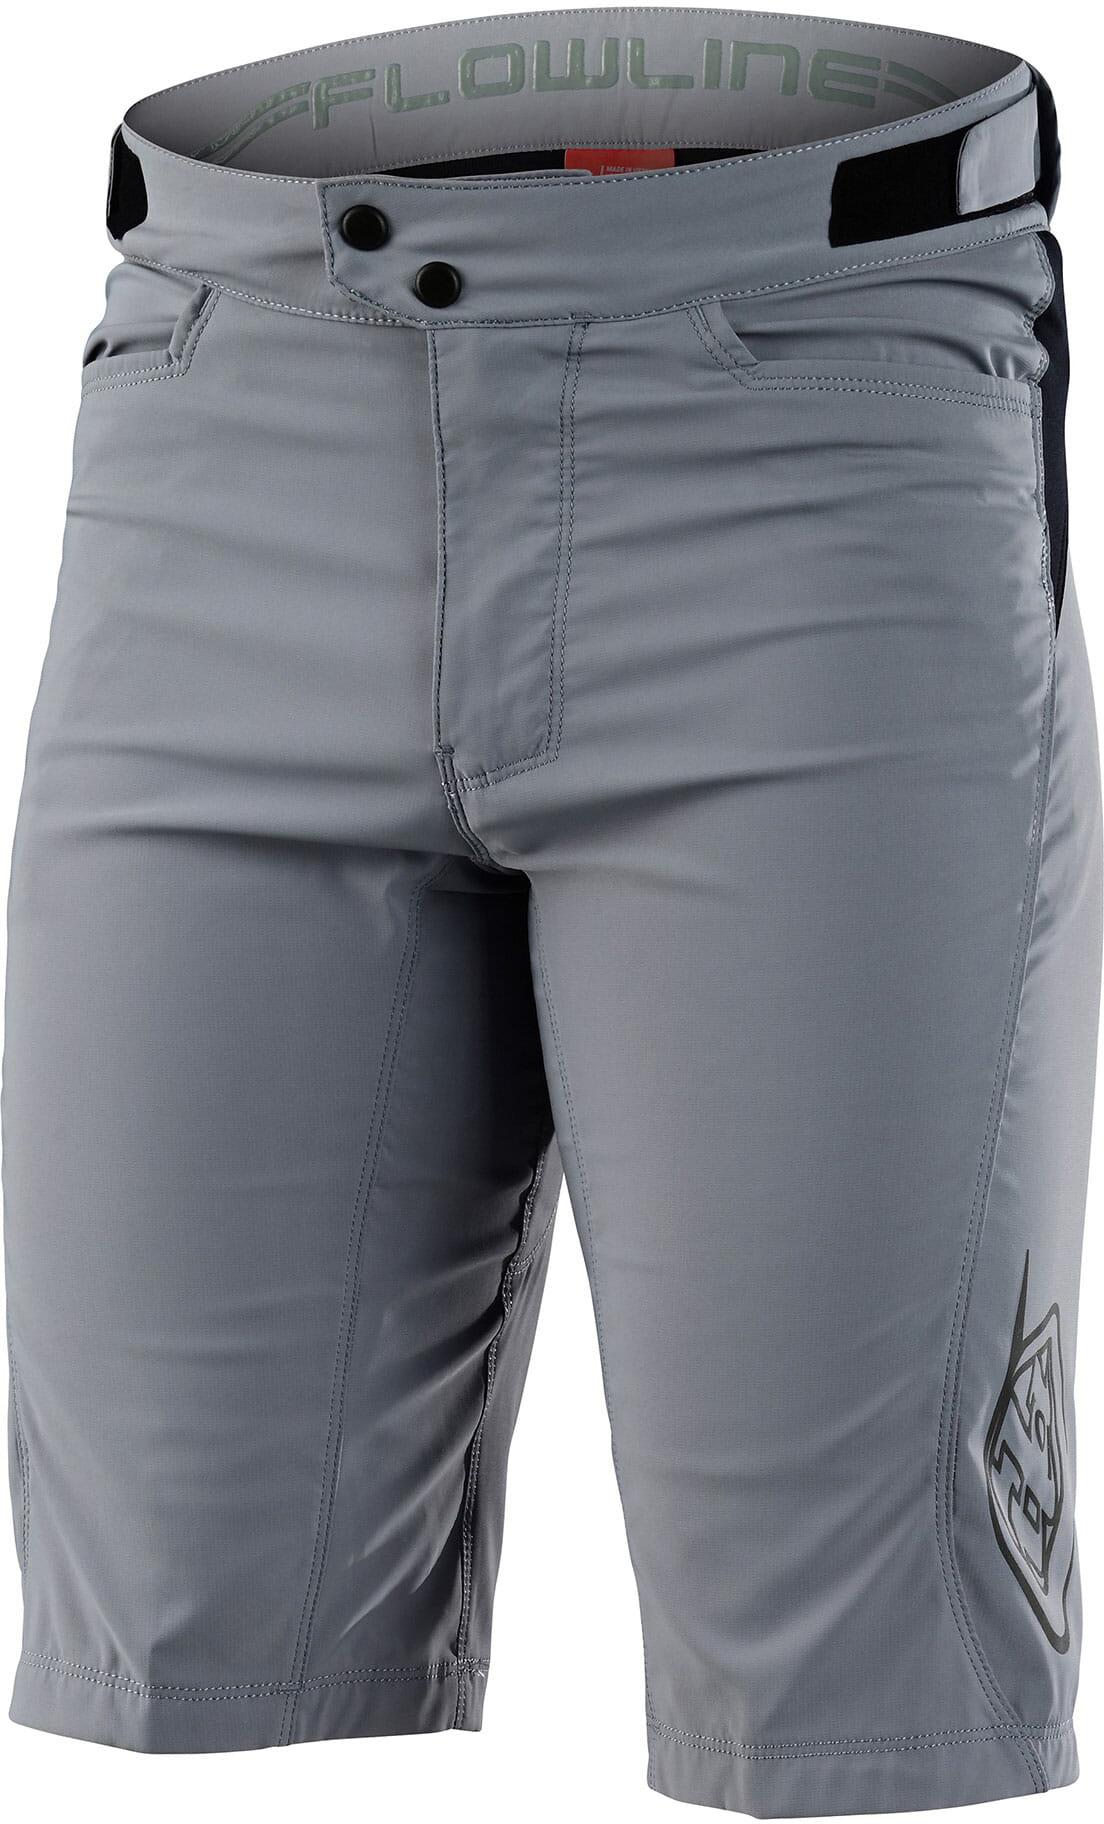 Troy Lee Designs Flowline Shorts - Solid Grey